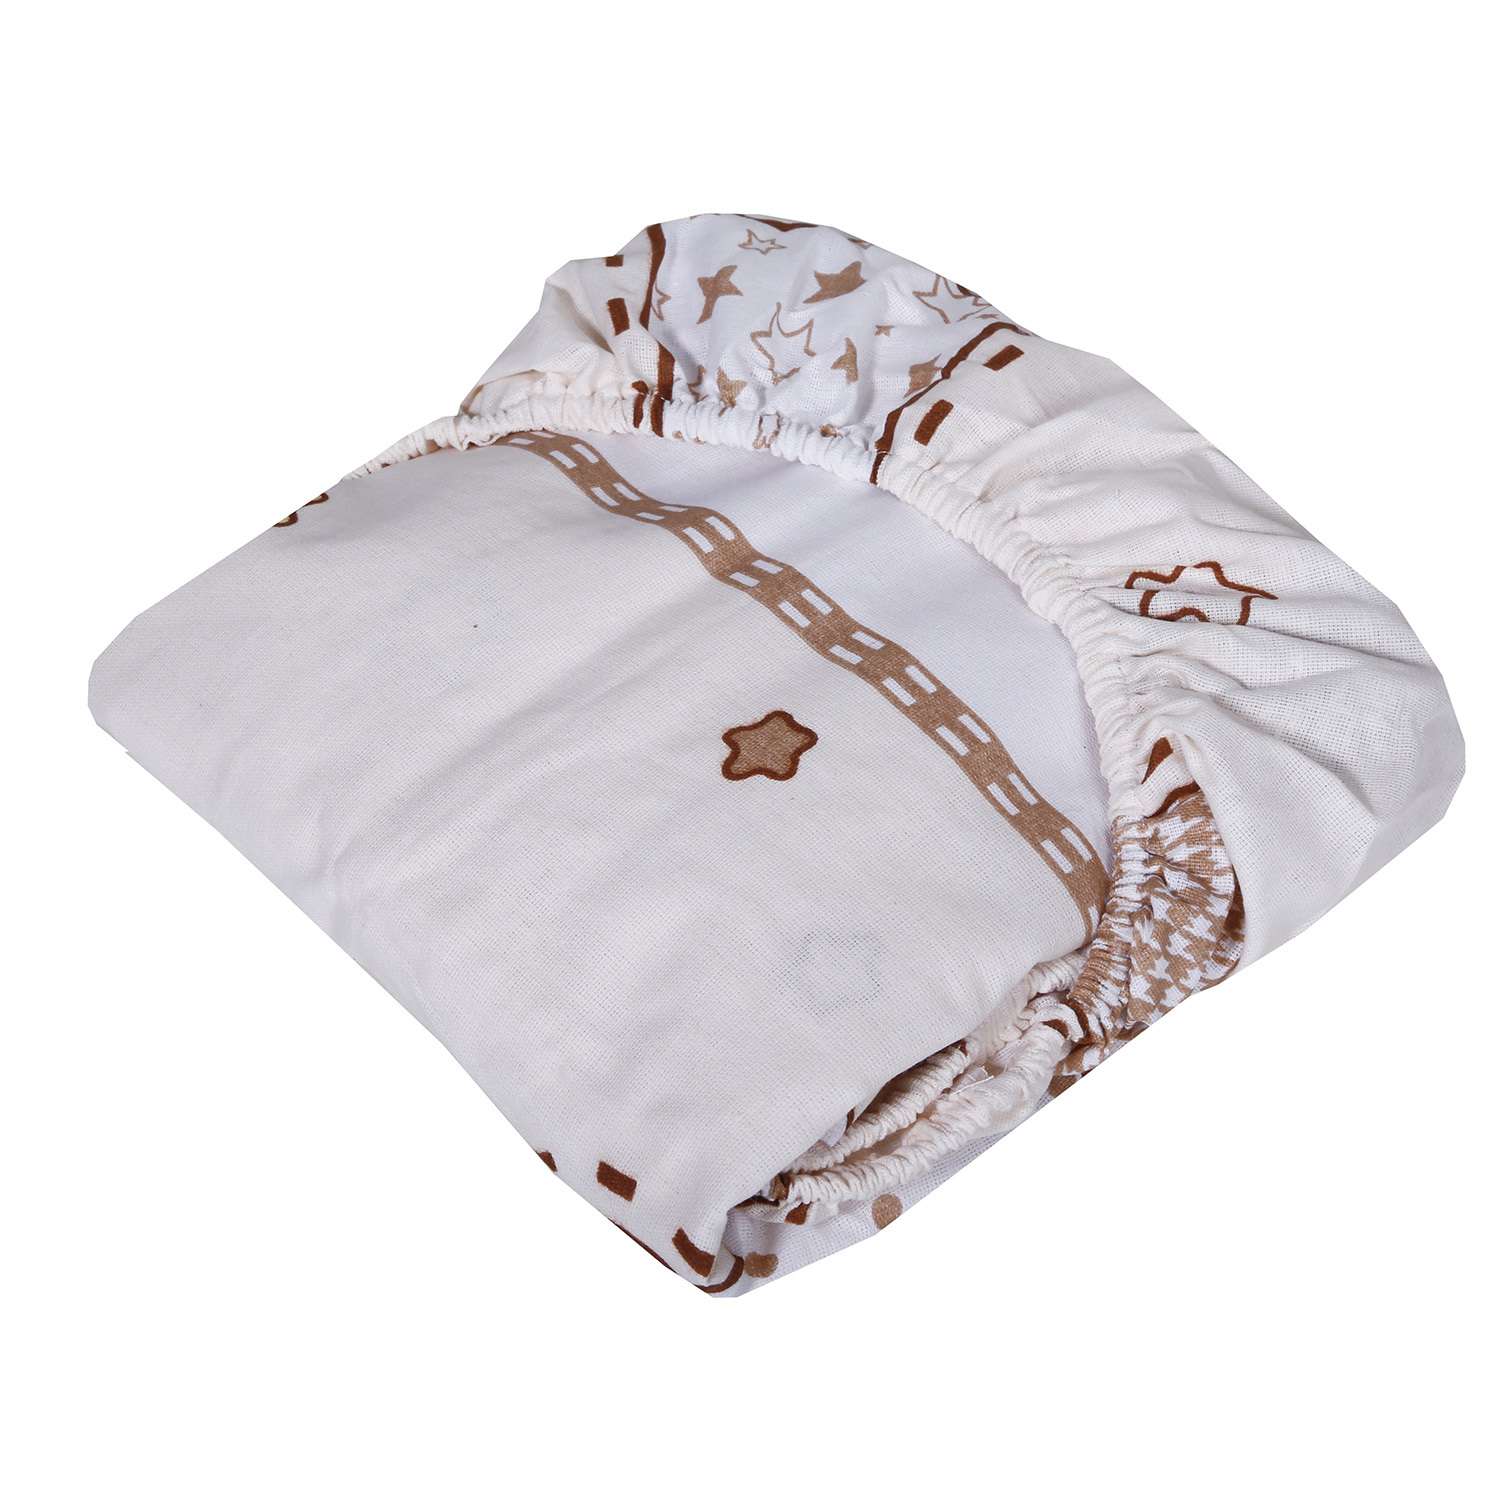 Комплект постельного белья Эдельвейс Африка 3предмета 10019 - фото 6